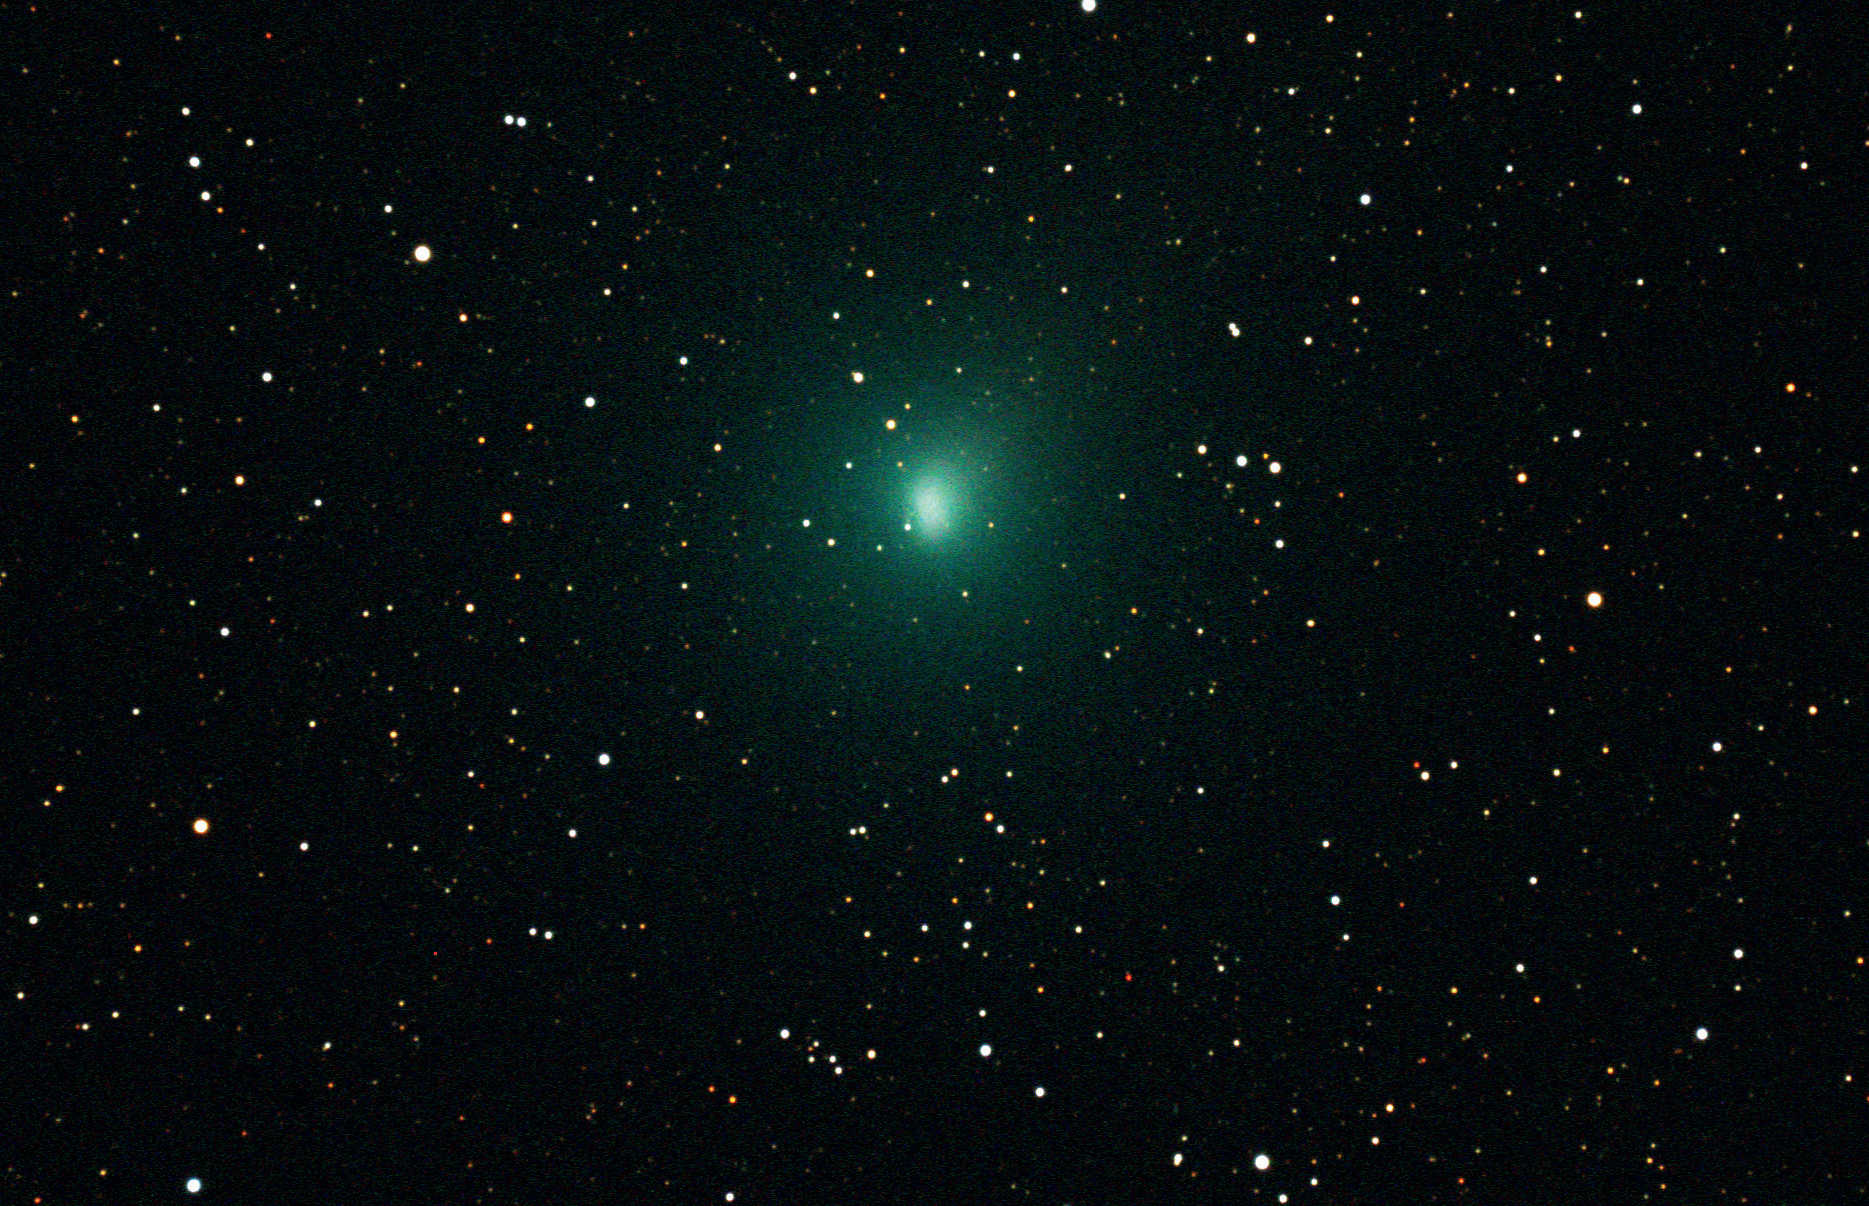 oder man richtet die Aufnahme an den Sternen
aus, so dass diese punktförmig erscheinen, der Kometenkopf aber weniger scharf abgegrenzt ist (b).
Die Rohdaten entstanden am 11.10.2010 mit einer gekühlten CCD-Kamera vom Typ SBIG ST-4000XCM
an einem Takahashi TOA-130. Die Summenbilder sind je aus acht Einzelaufnahmen mit einer Belichtungszeit
von je 120 Sekunden zusammengesetzt.